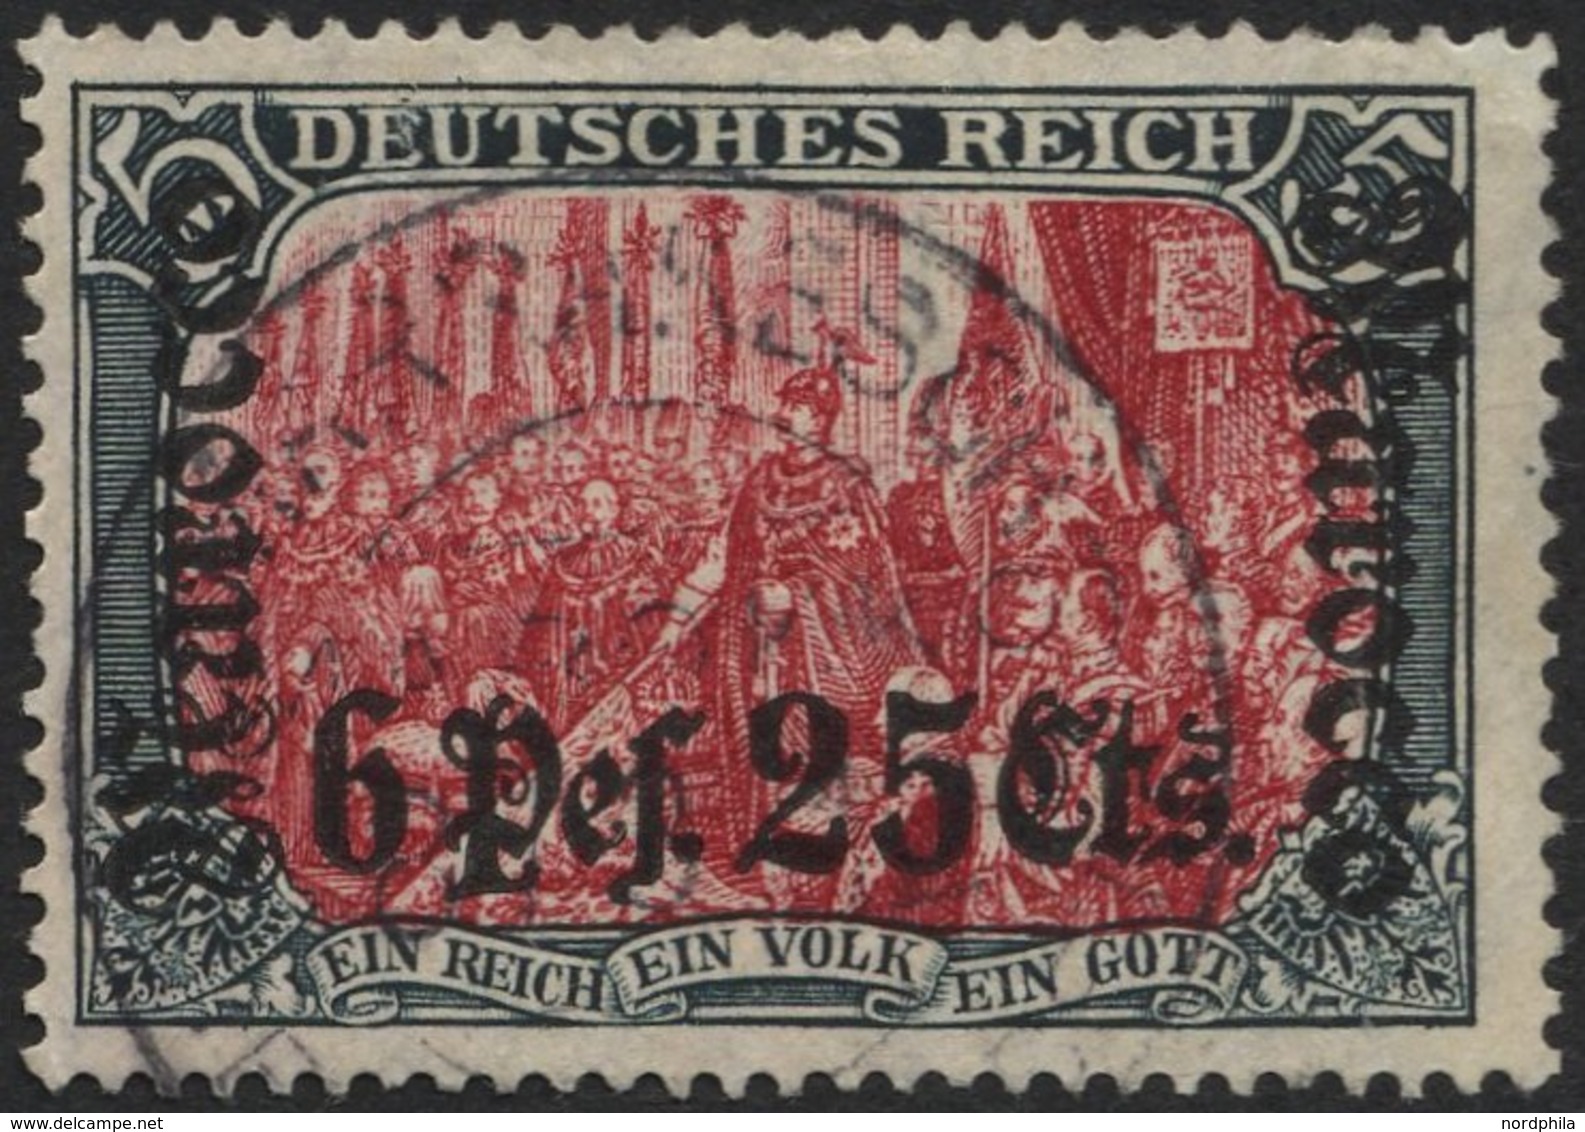 DP IN MAROKKO 45 O, 1906, 6 P. 25 C. Auf 5 M., Mit Wz., Stempel MARRAKESCH (KK), Feinst (Laschenaufriss Und Ausgebessert - Deutsche Post In Marokko